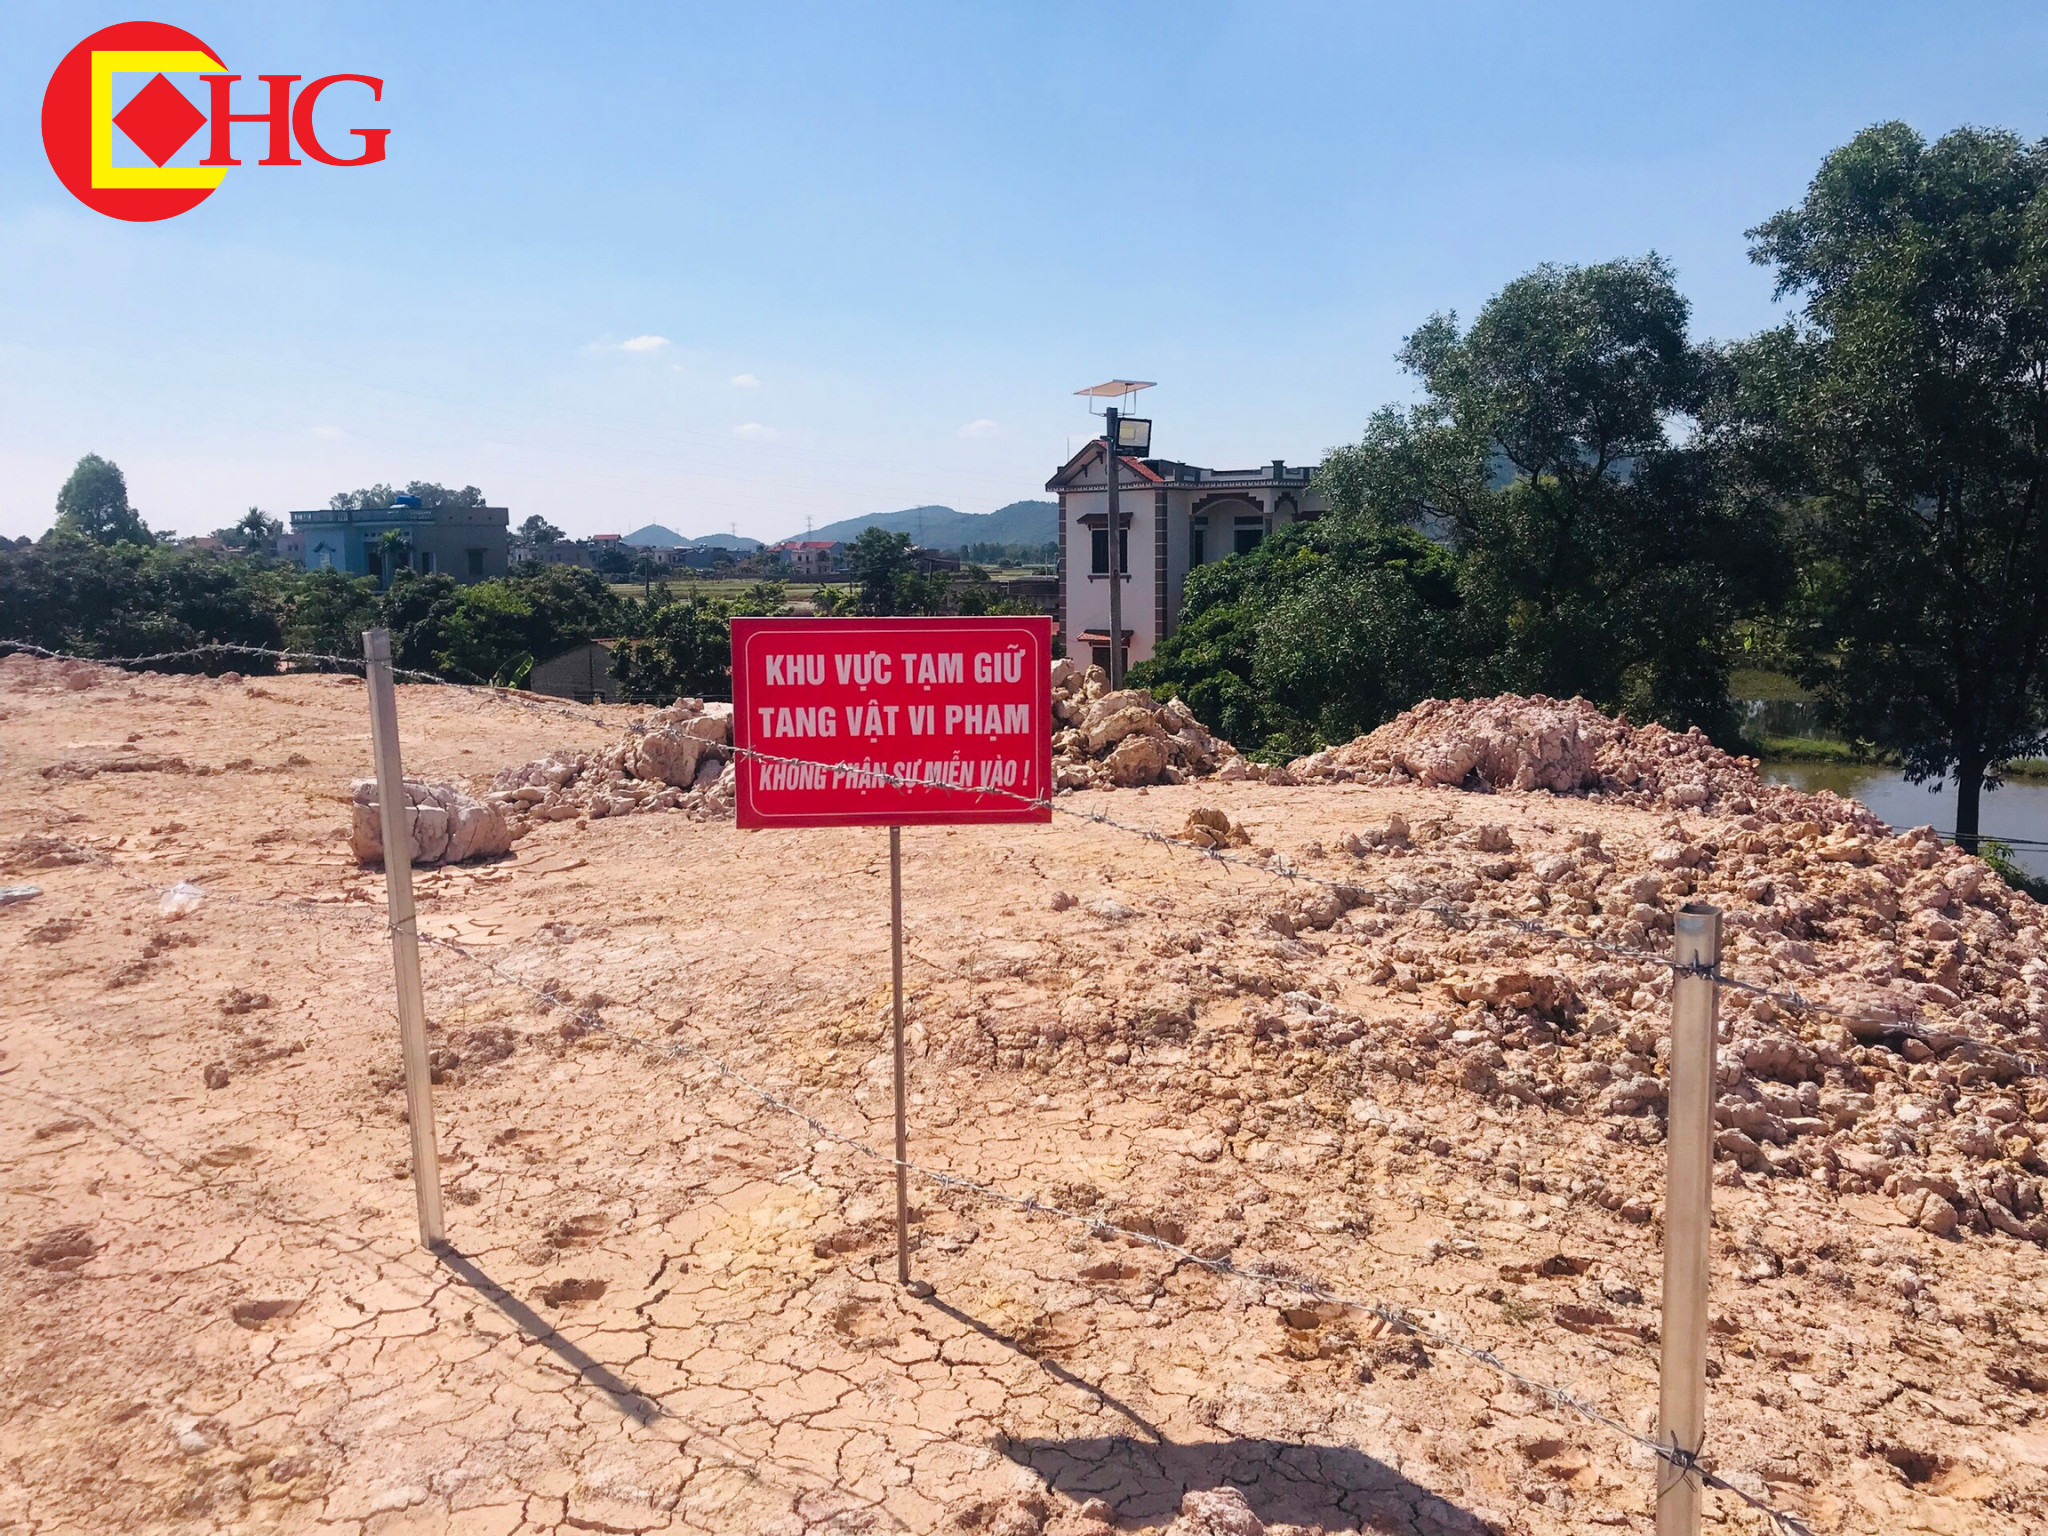 Khoáng sản đất sét được cắm biển tạm giữ tang vật tại thôn Yên Tập Bắc, xã Yên Lư, huyện Yên Dũng